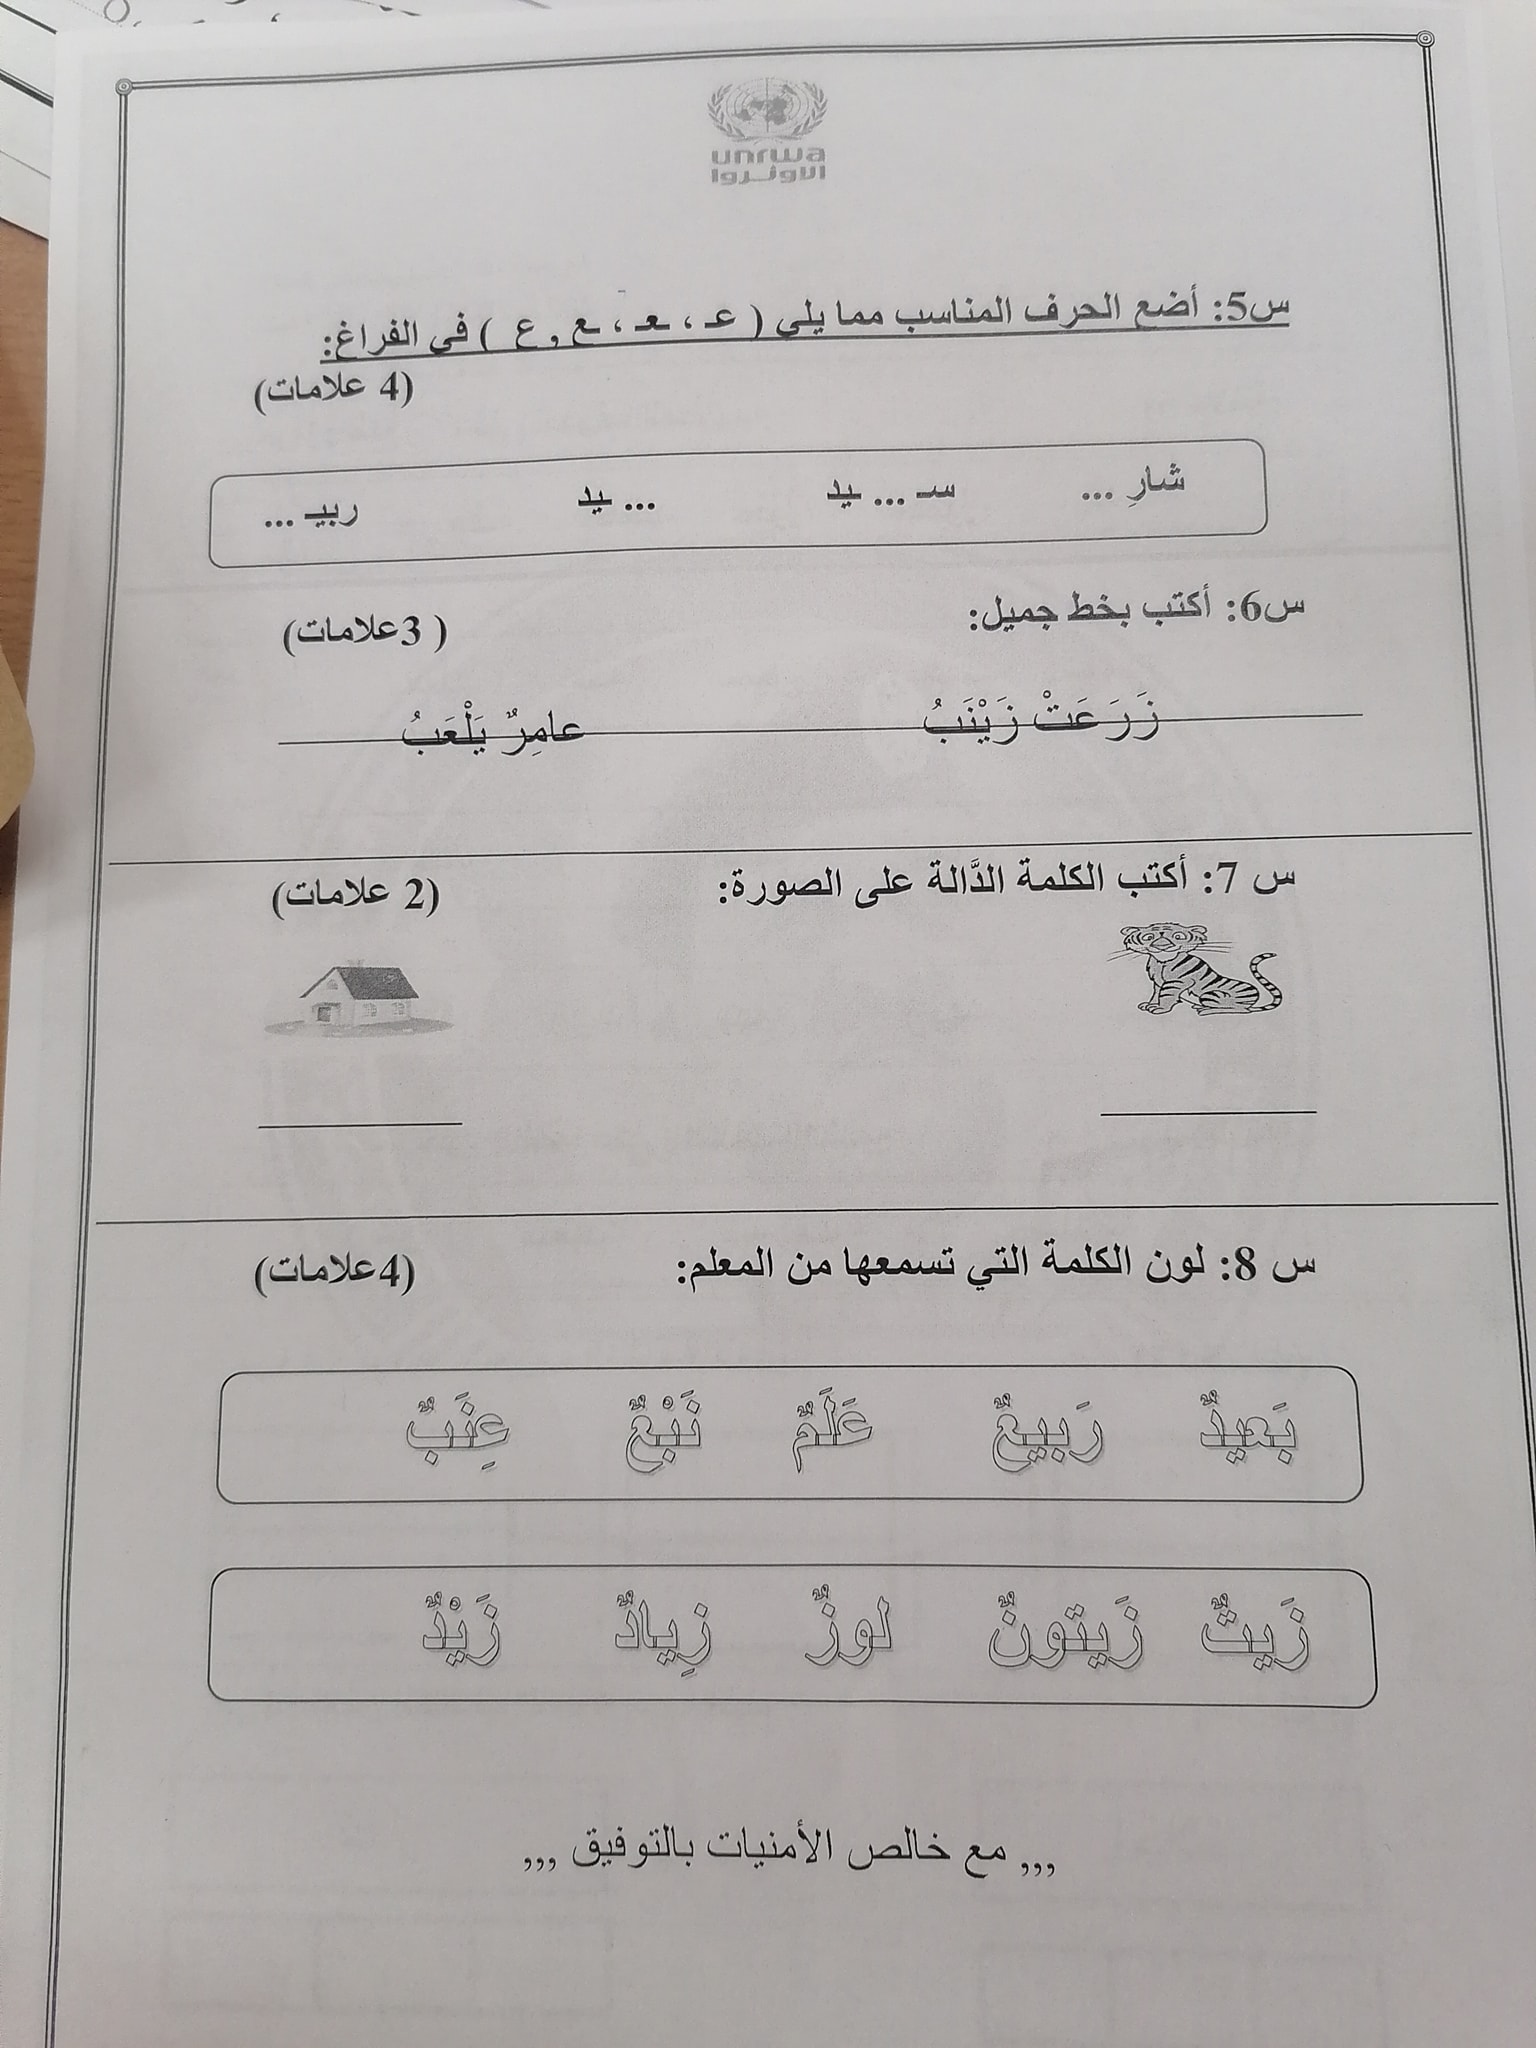 NzQyMjkx2 بالصور امتحان لغة عربية نهائي للصف الاول الفصل الاول 2021